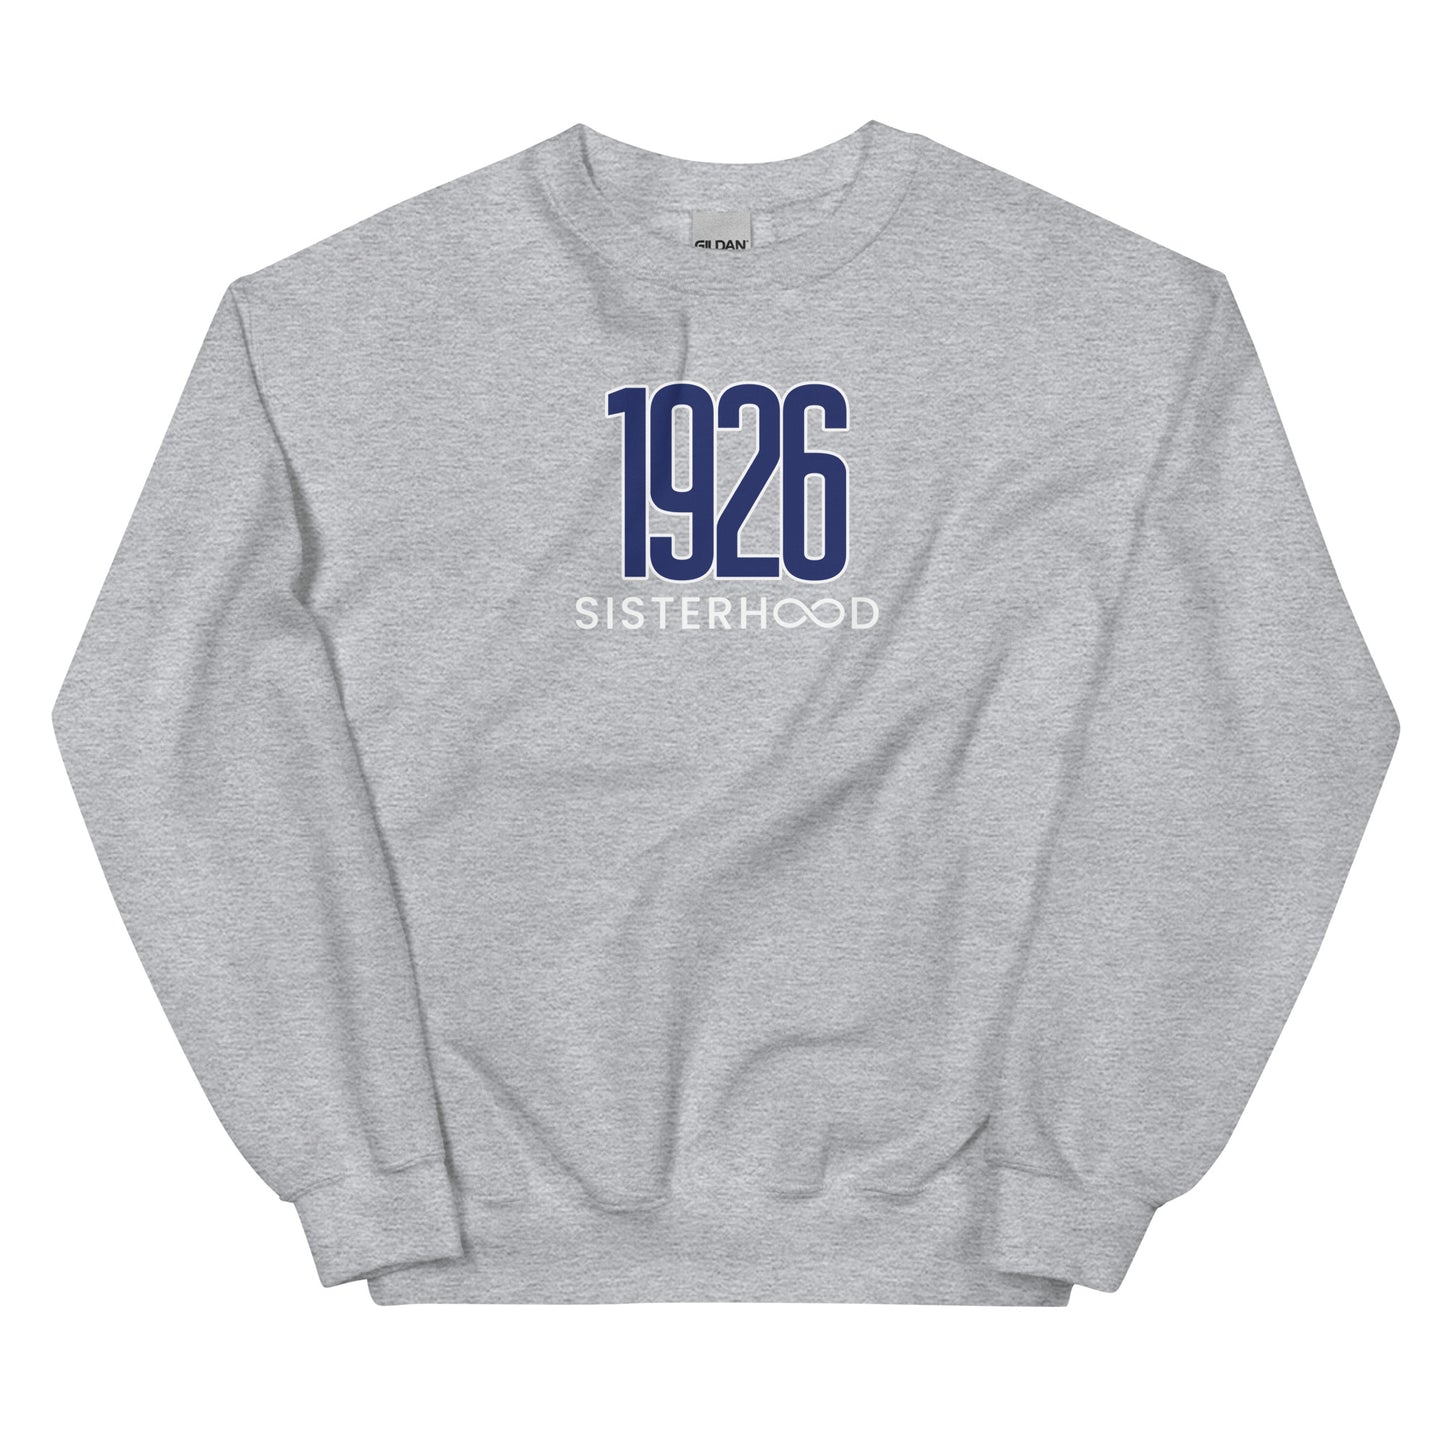 Bennett 1926 Sisterhood - Unisex Fleece Sweatshirt